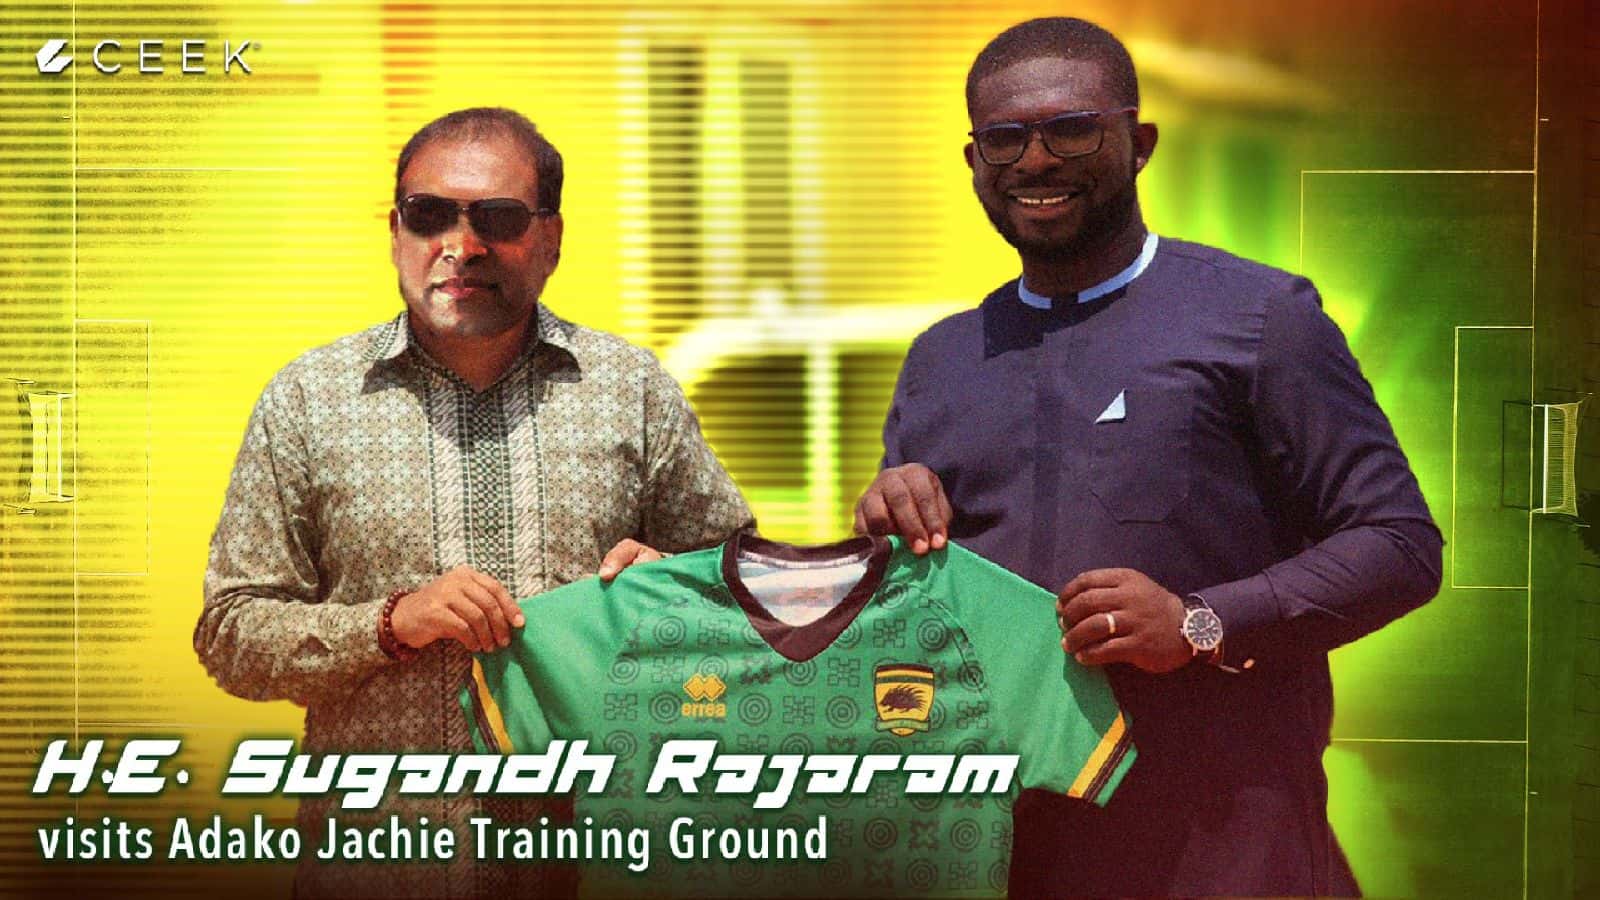 Indian High Commissioner to Ghana, H.E. Sugandh Rajaram visits Adako Jachie Training Ground